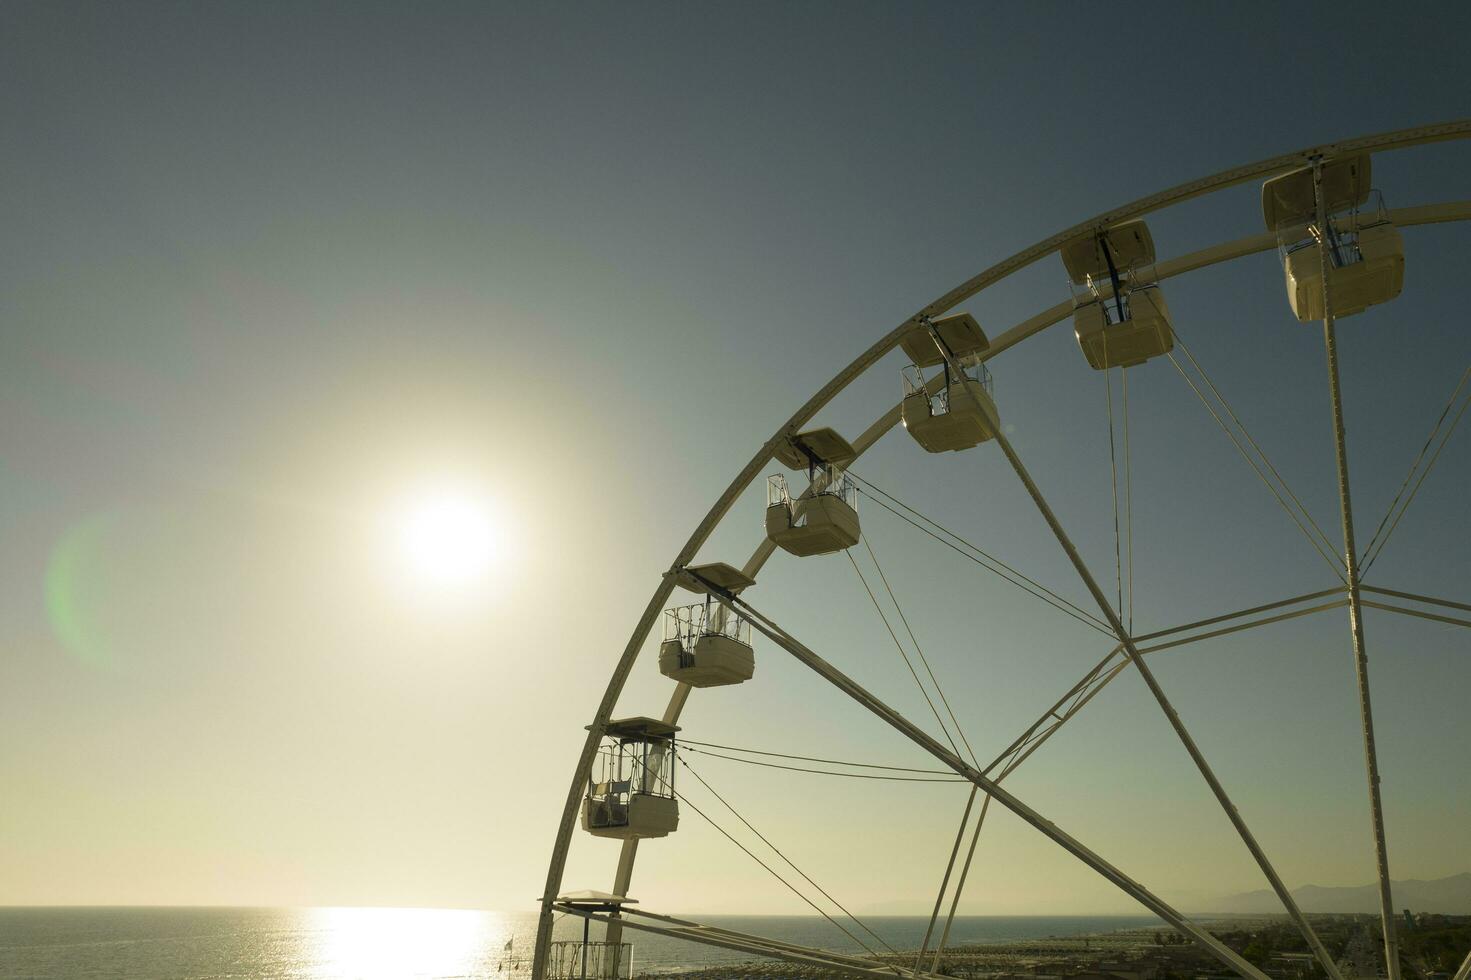 fotografisch Detail von ein Ferris Rad foto